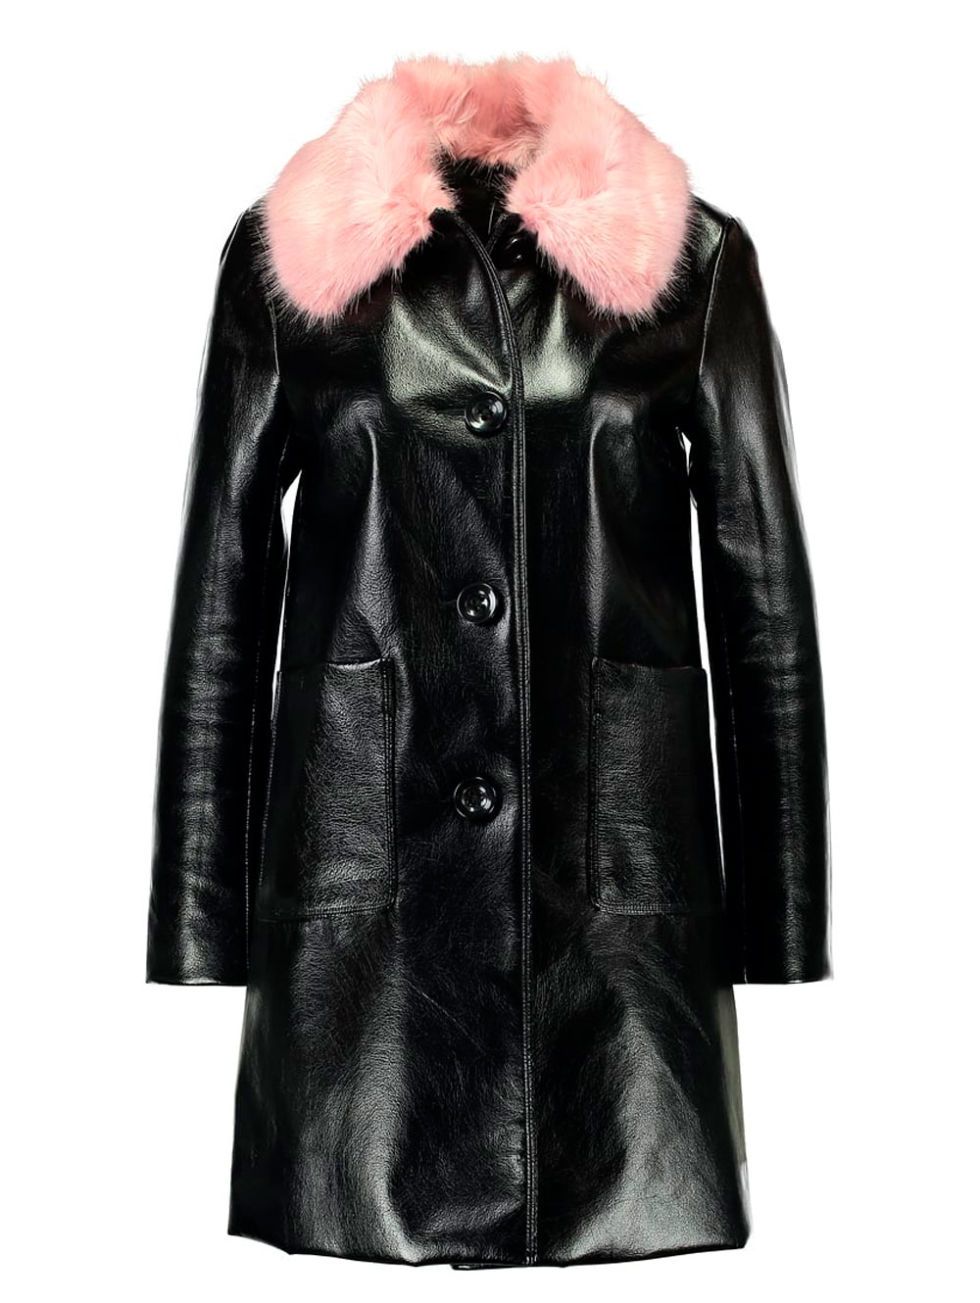 Clothing, Fur, Outerwear, Fur clothing, Leather, Jacket, Coat, Sleeve, Leather jacket, Overcoat, 